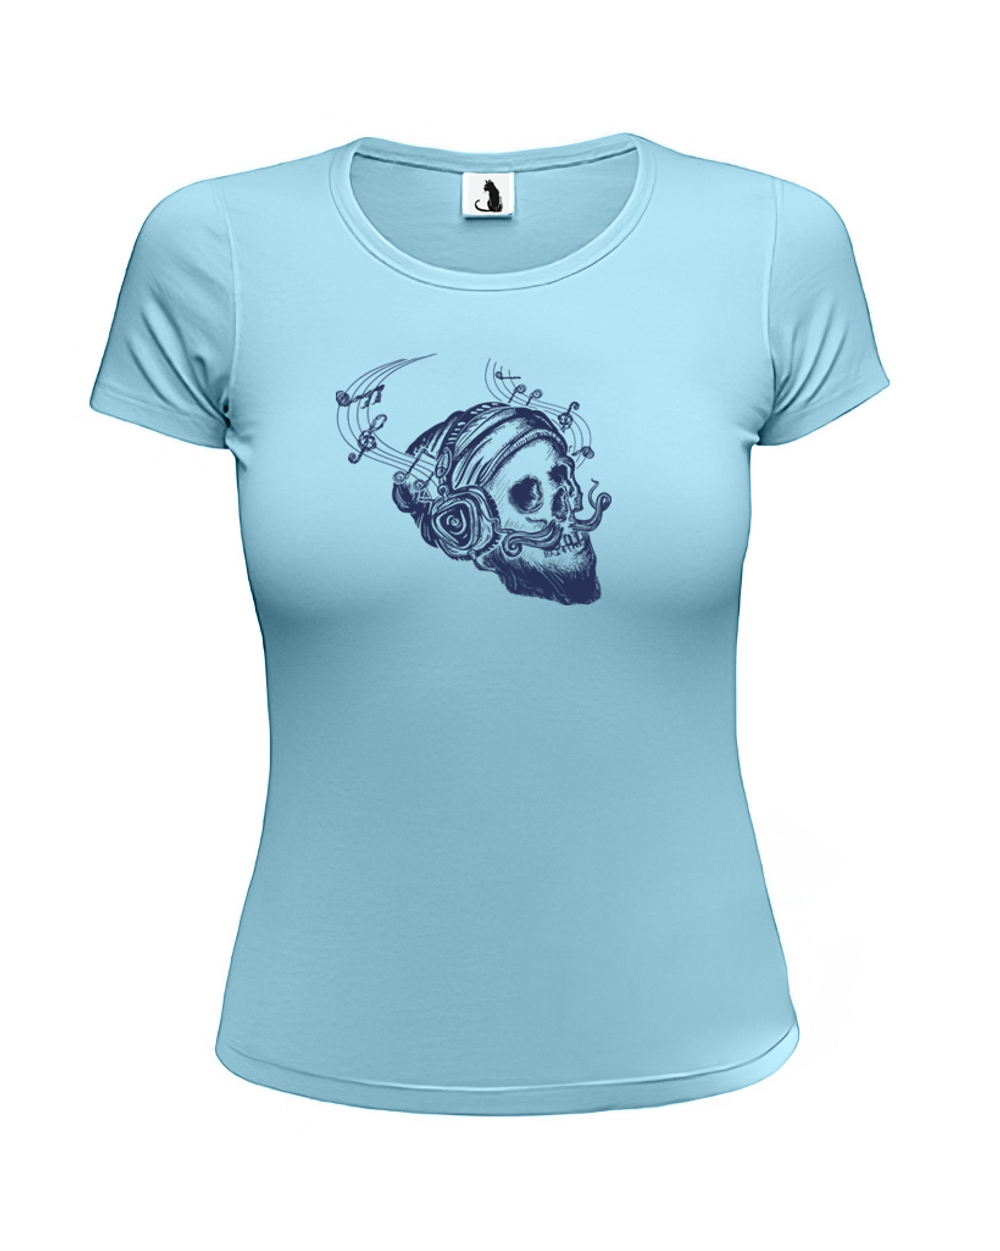 Футболка череп и ноты женская приталенная голубая с синим рисунком